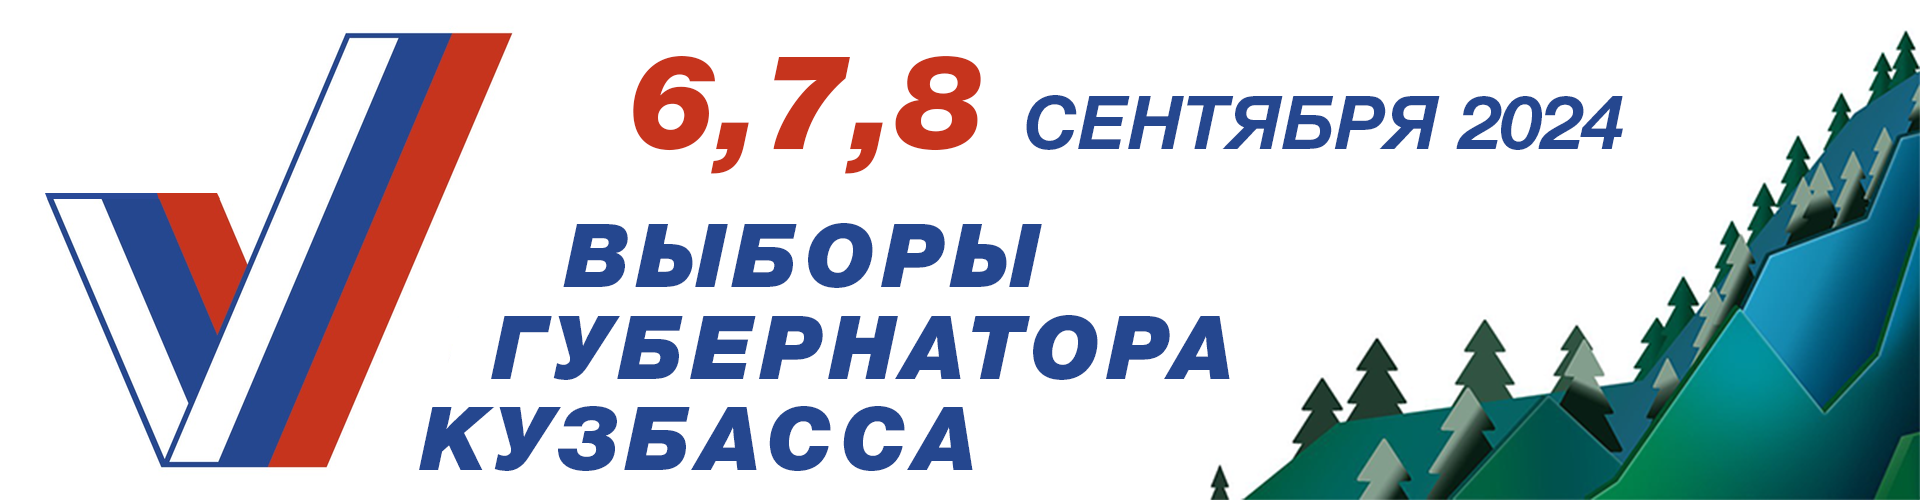 Выборы губернатора Кузбасса 2024